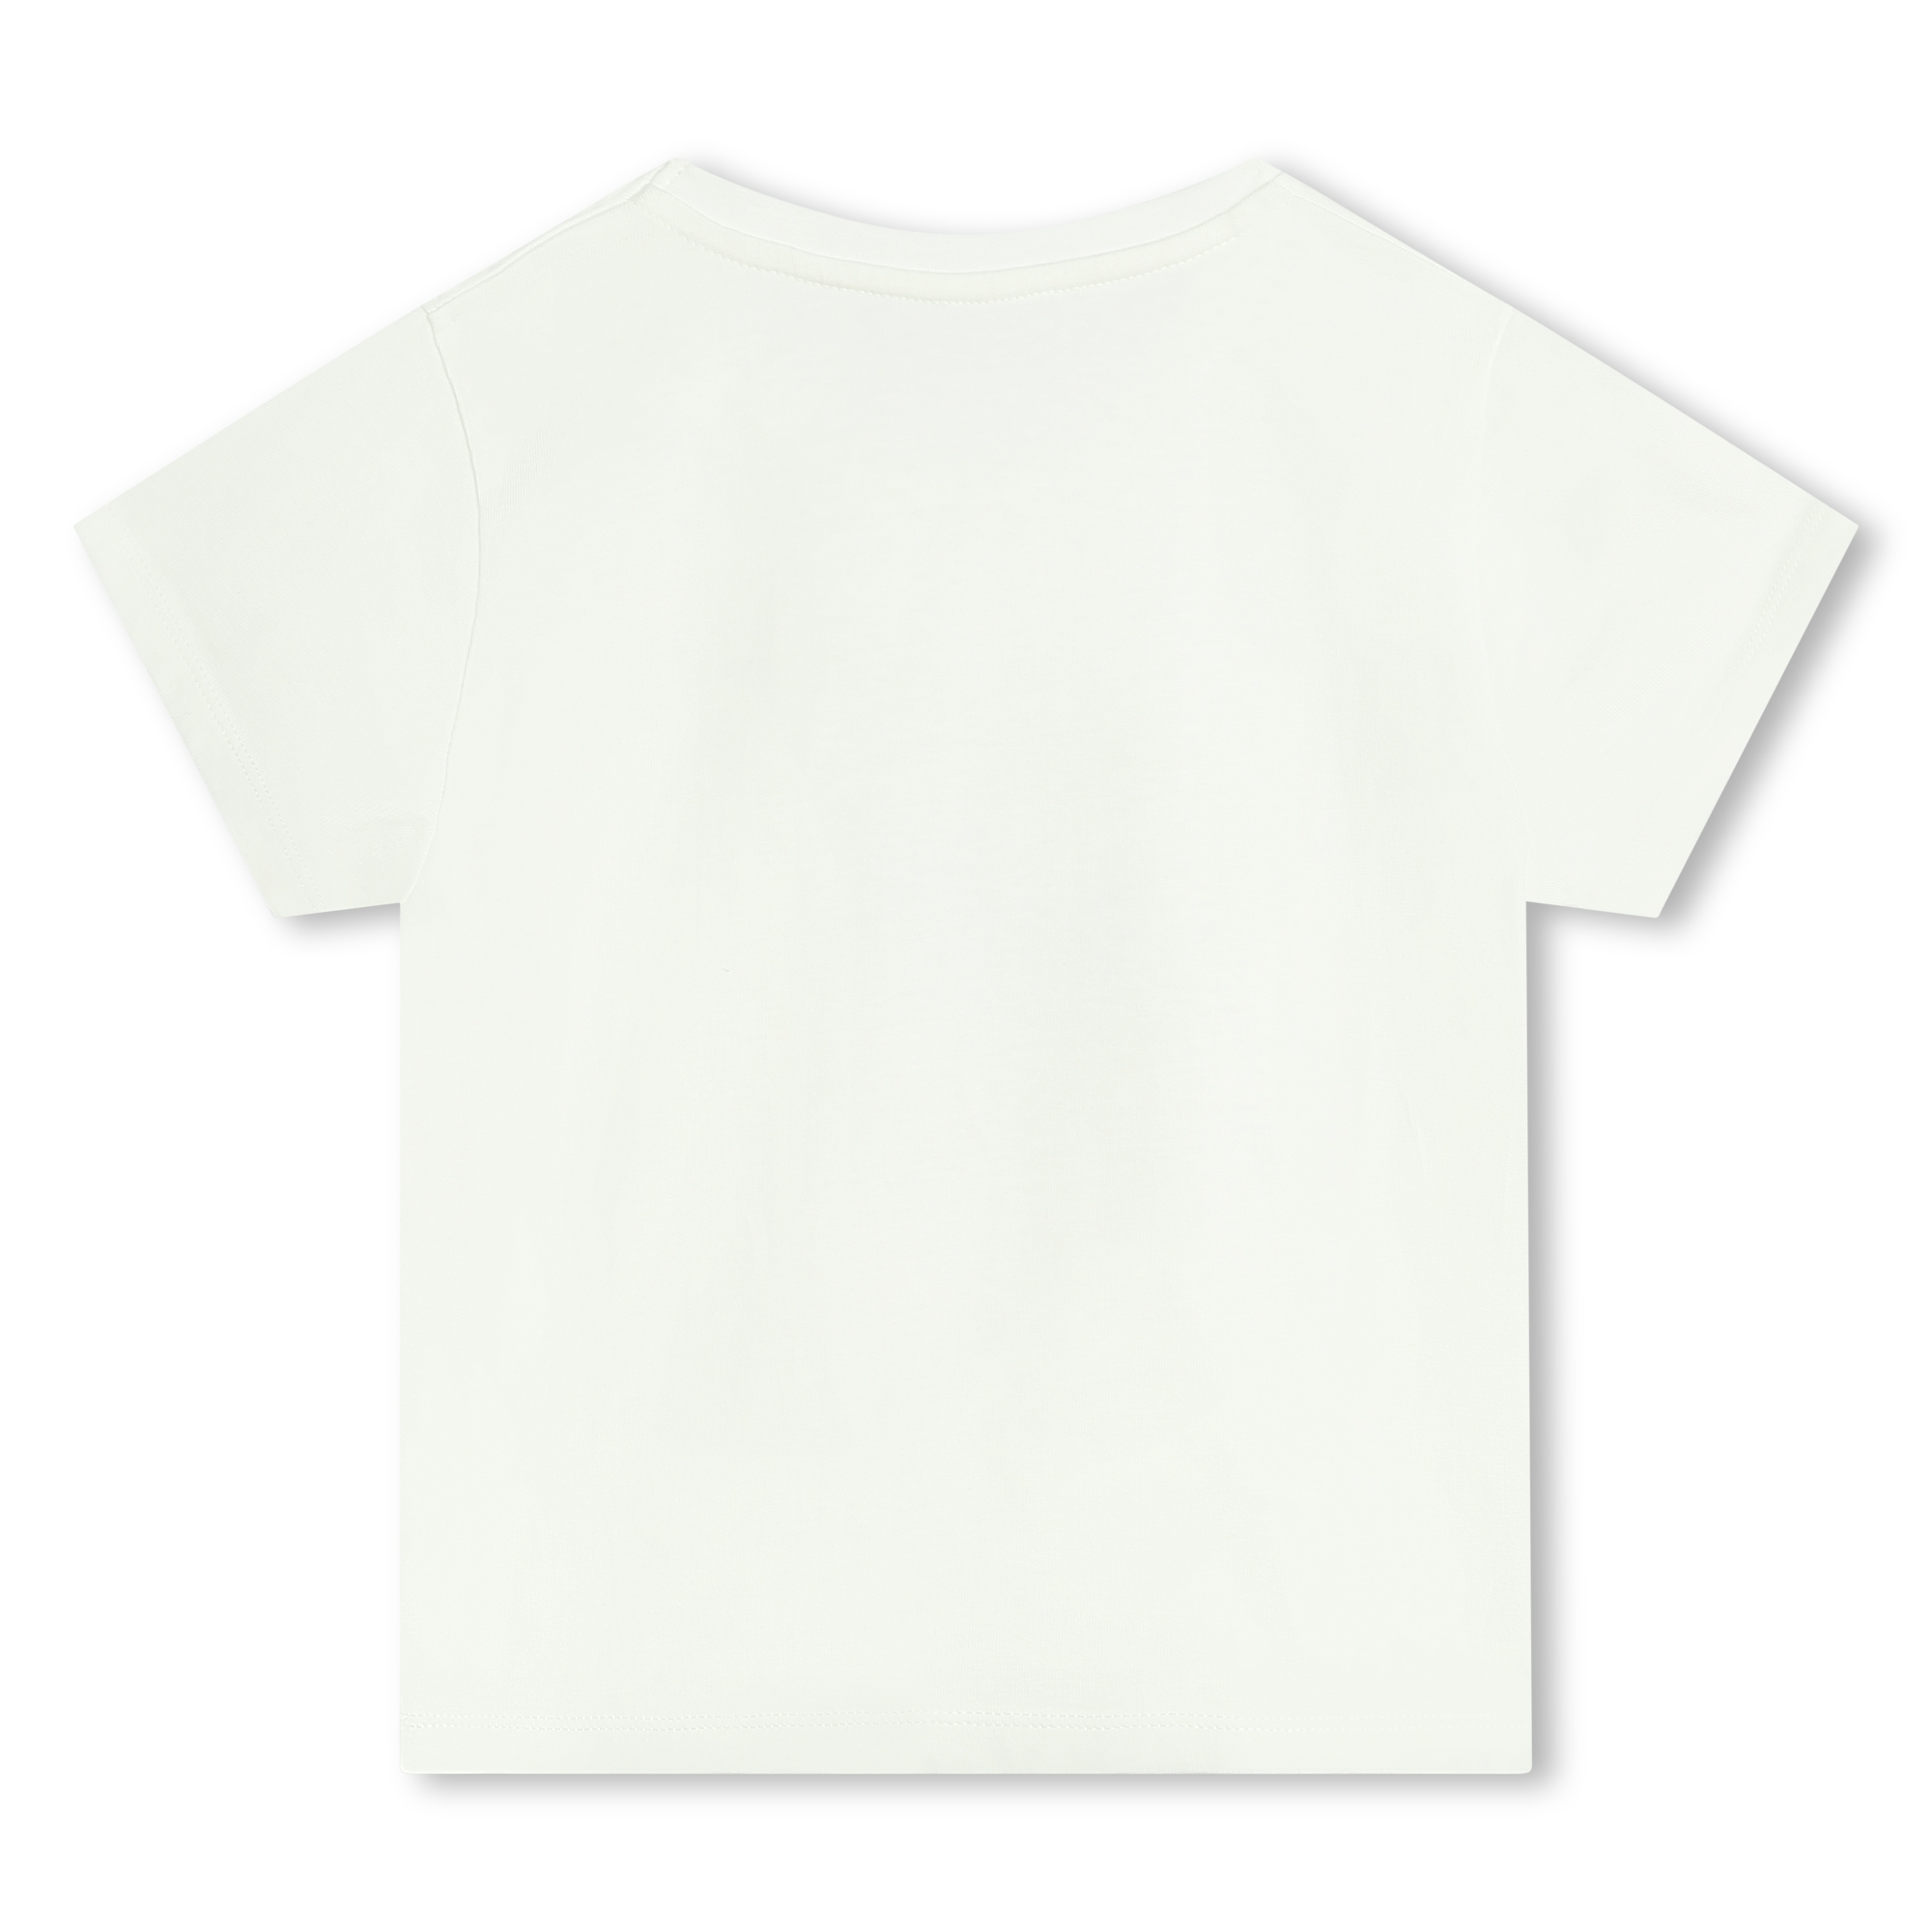 Printed cotton T-shirt MICHAEL KORS for GIRL